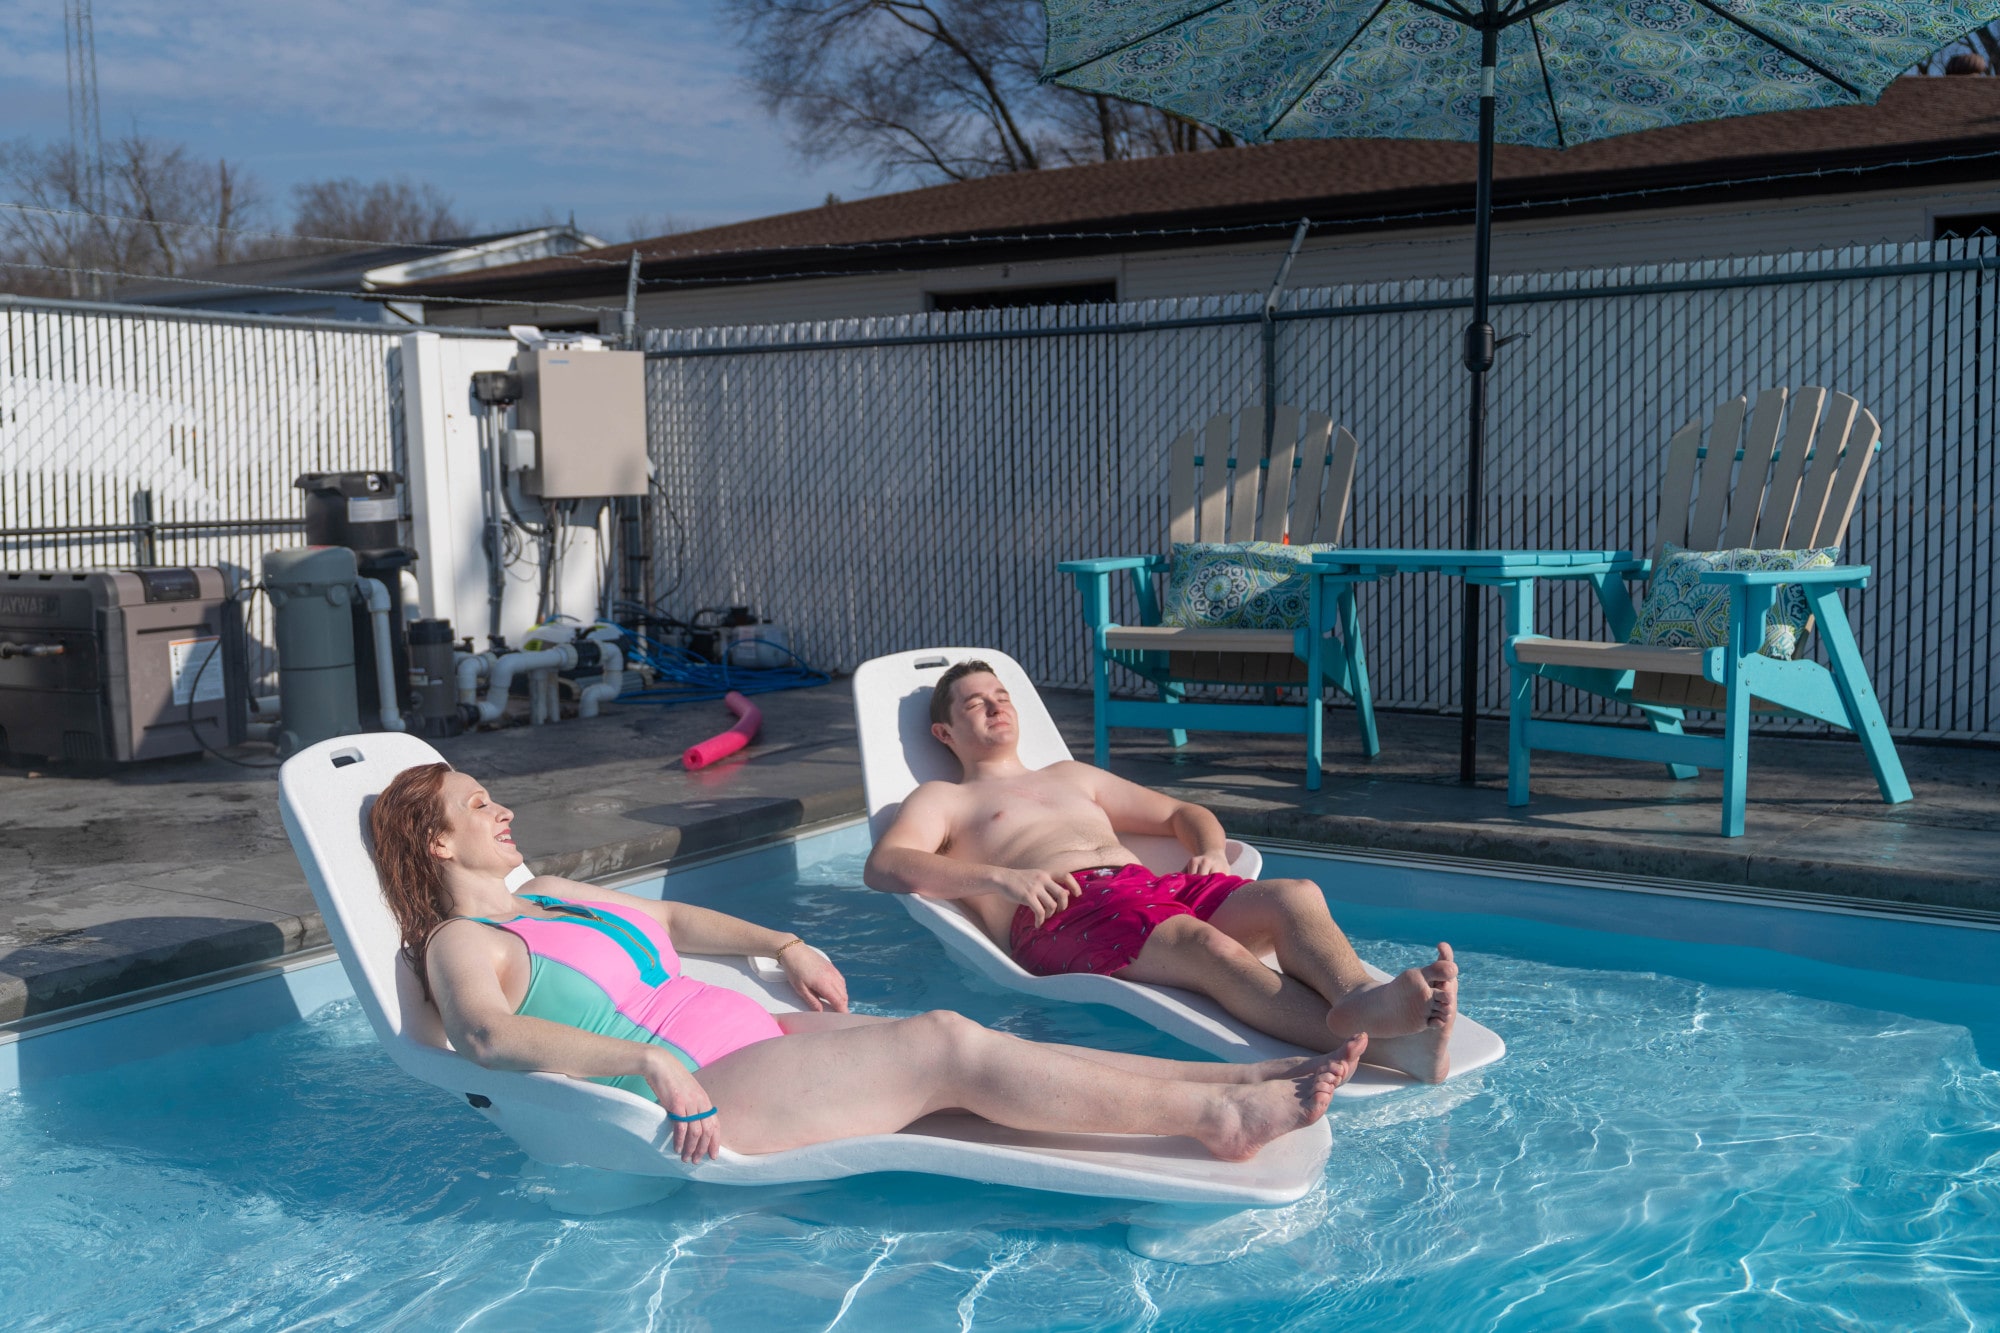 Two people enjoying time in a fiberglass pool.